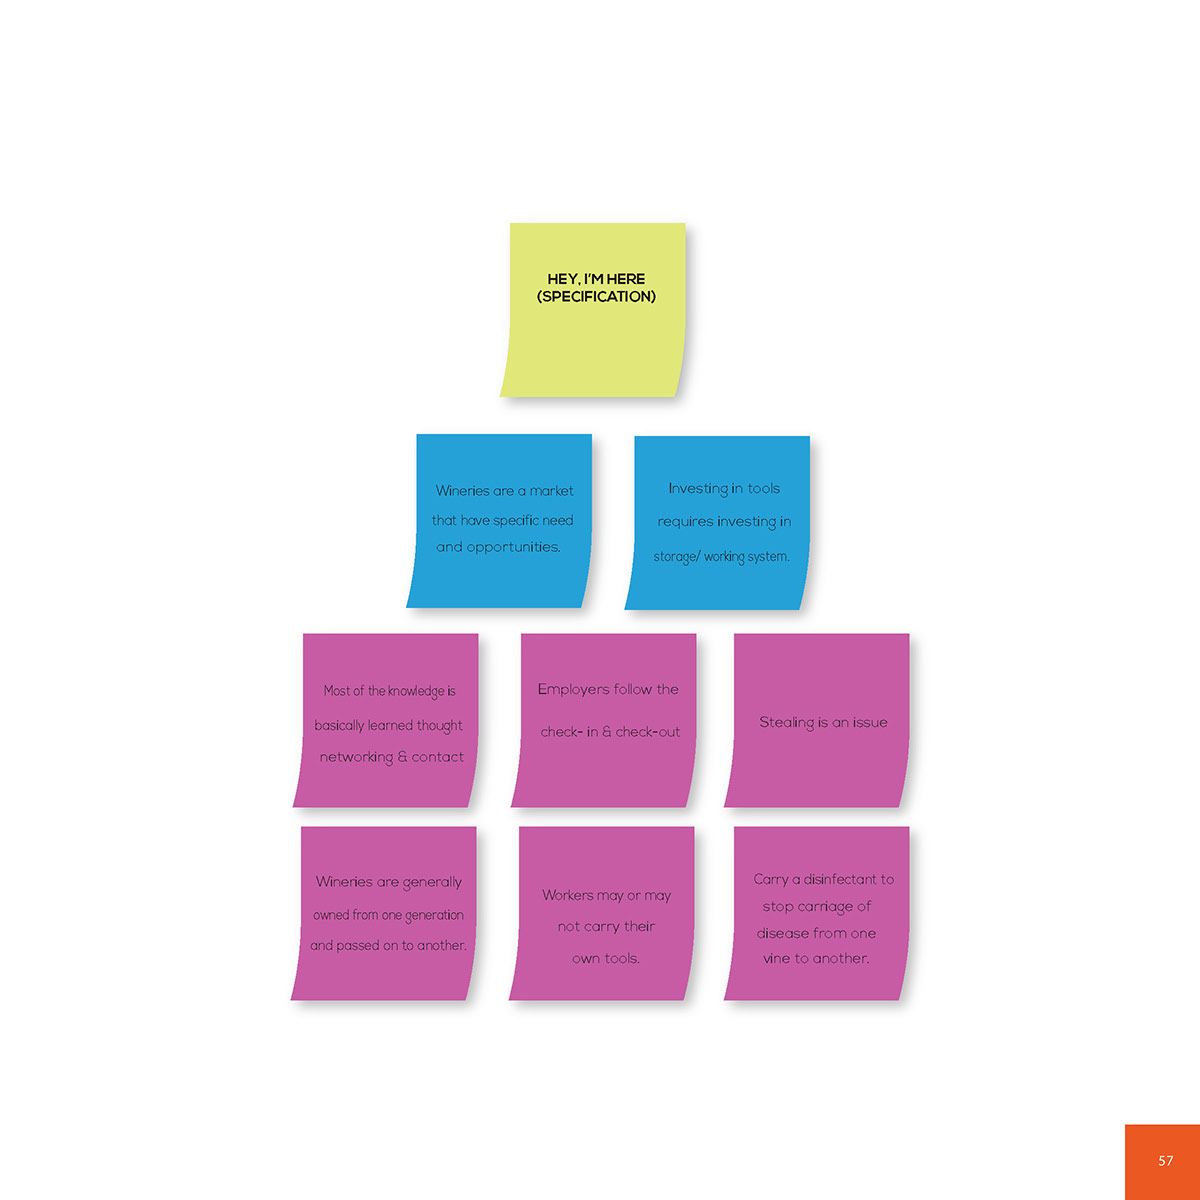 Adobe Portfolio User research design thinking design tools design model design methodologies